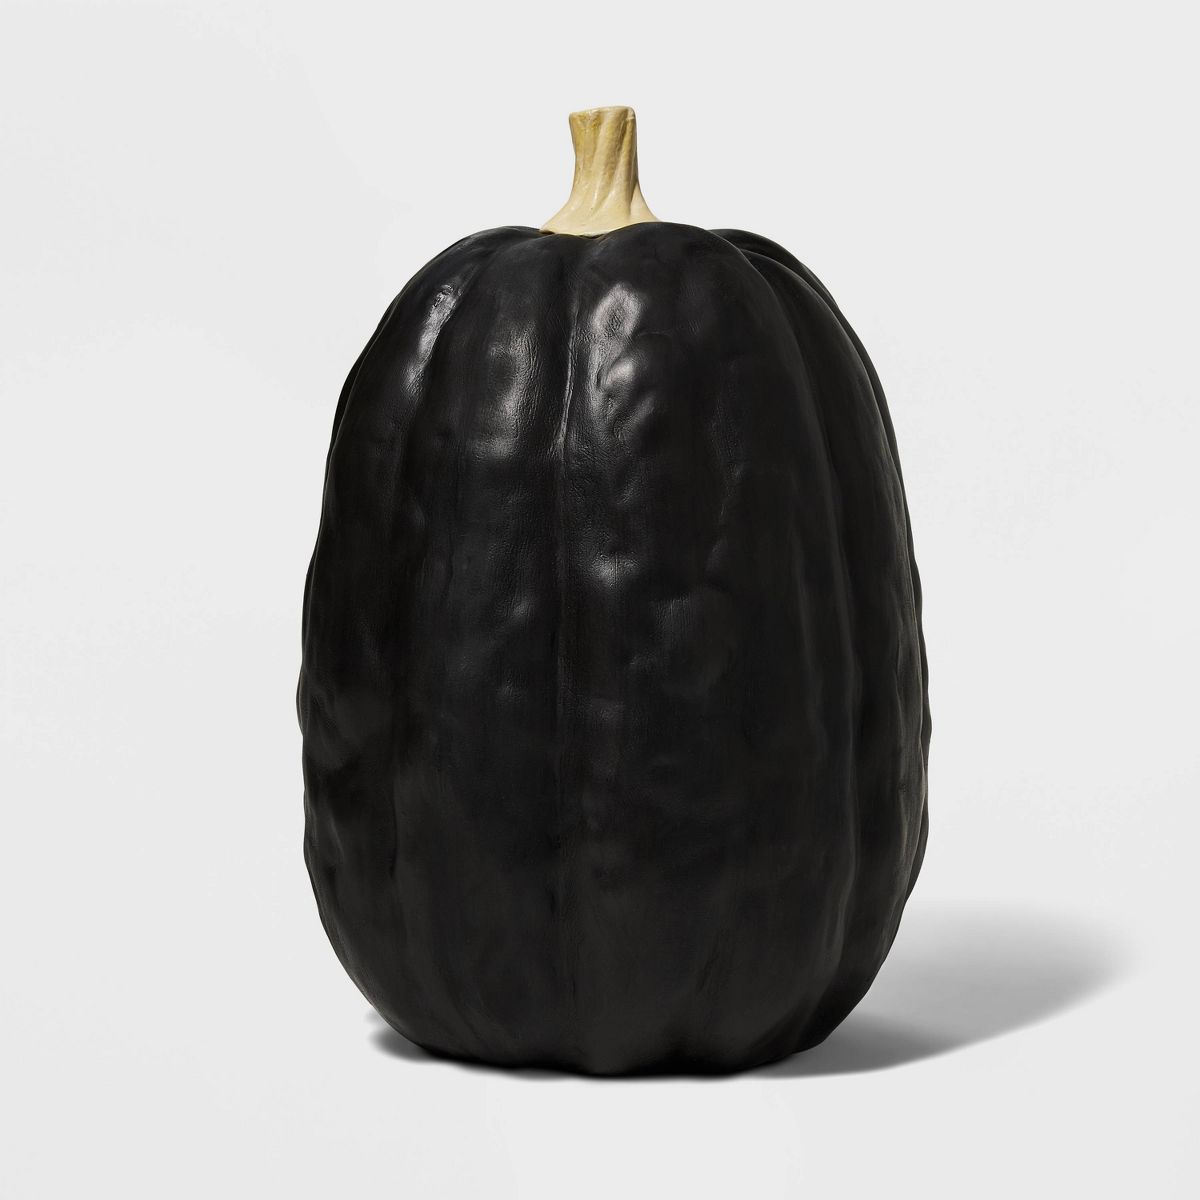 Falloween Large Black Sheltered Porch Pumpkin Halloween Decorative Sculpture - Hyde & EEK! Boutiq... | Target